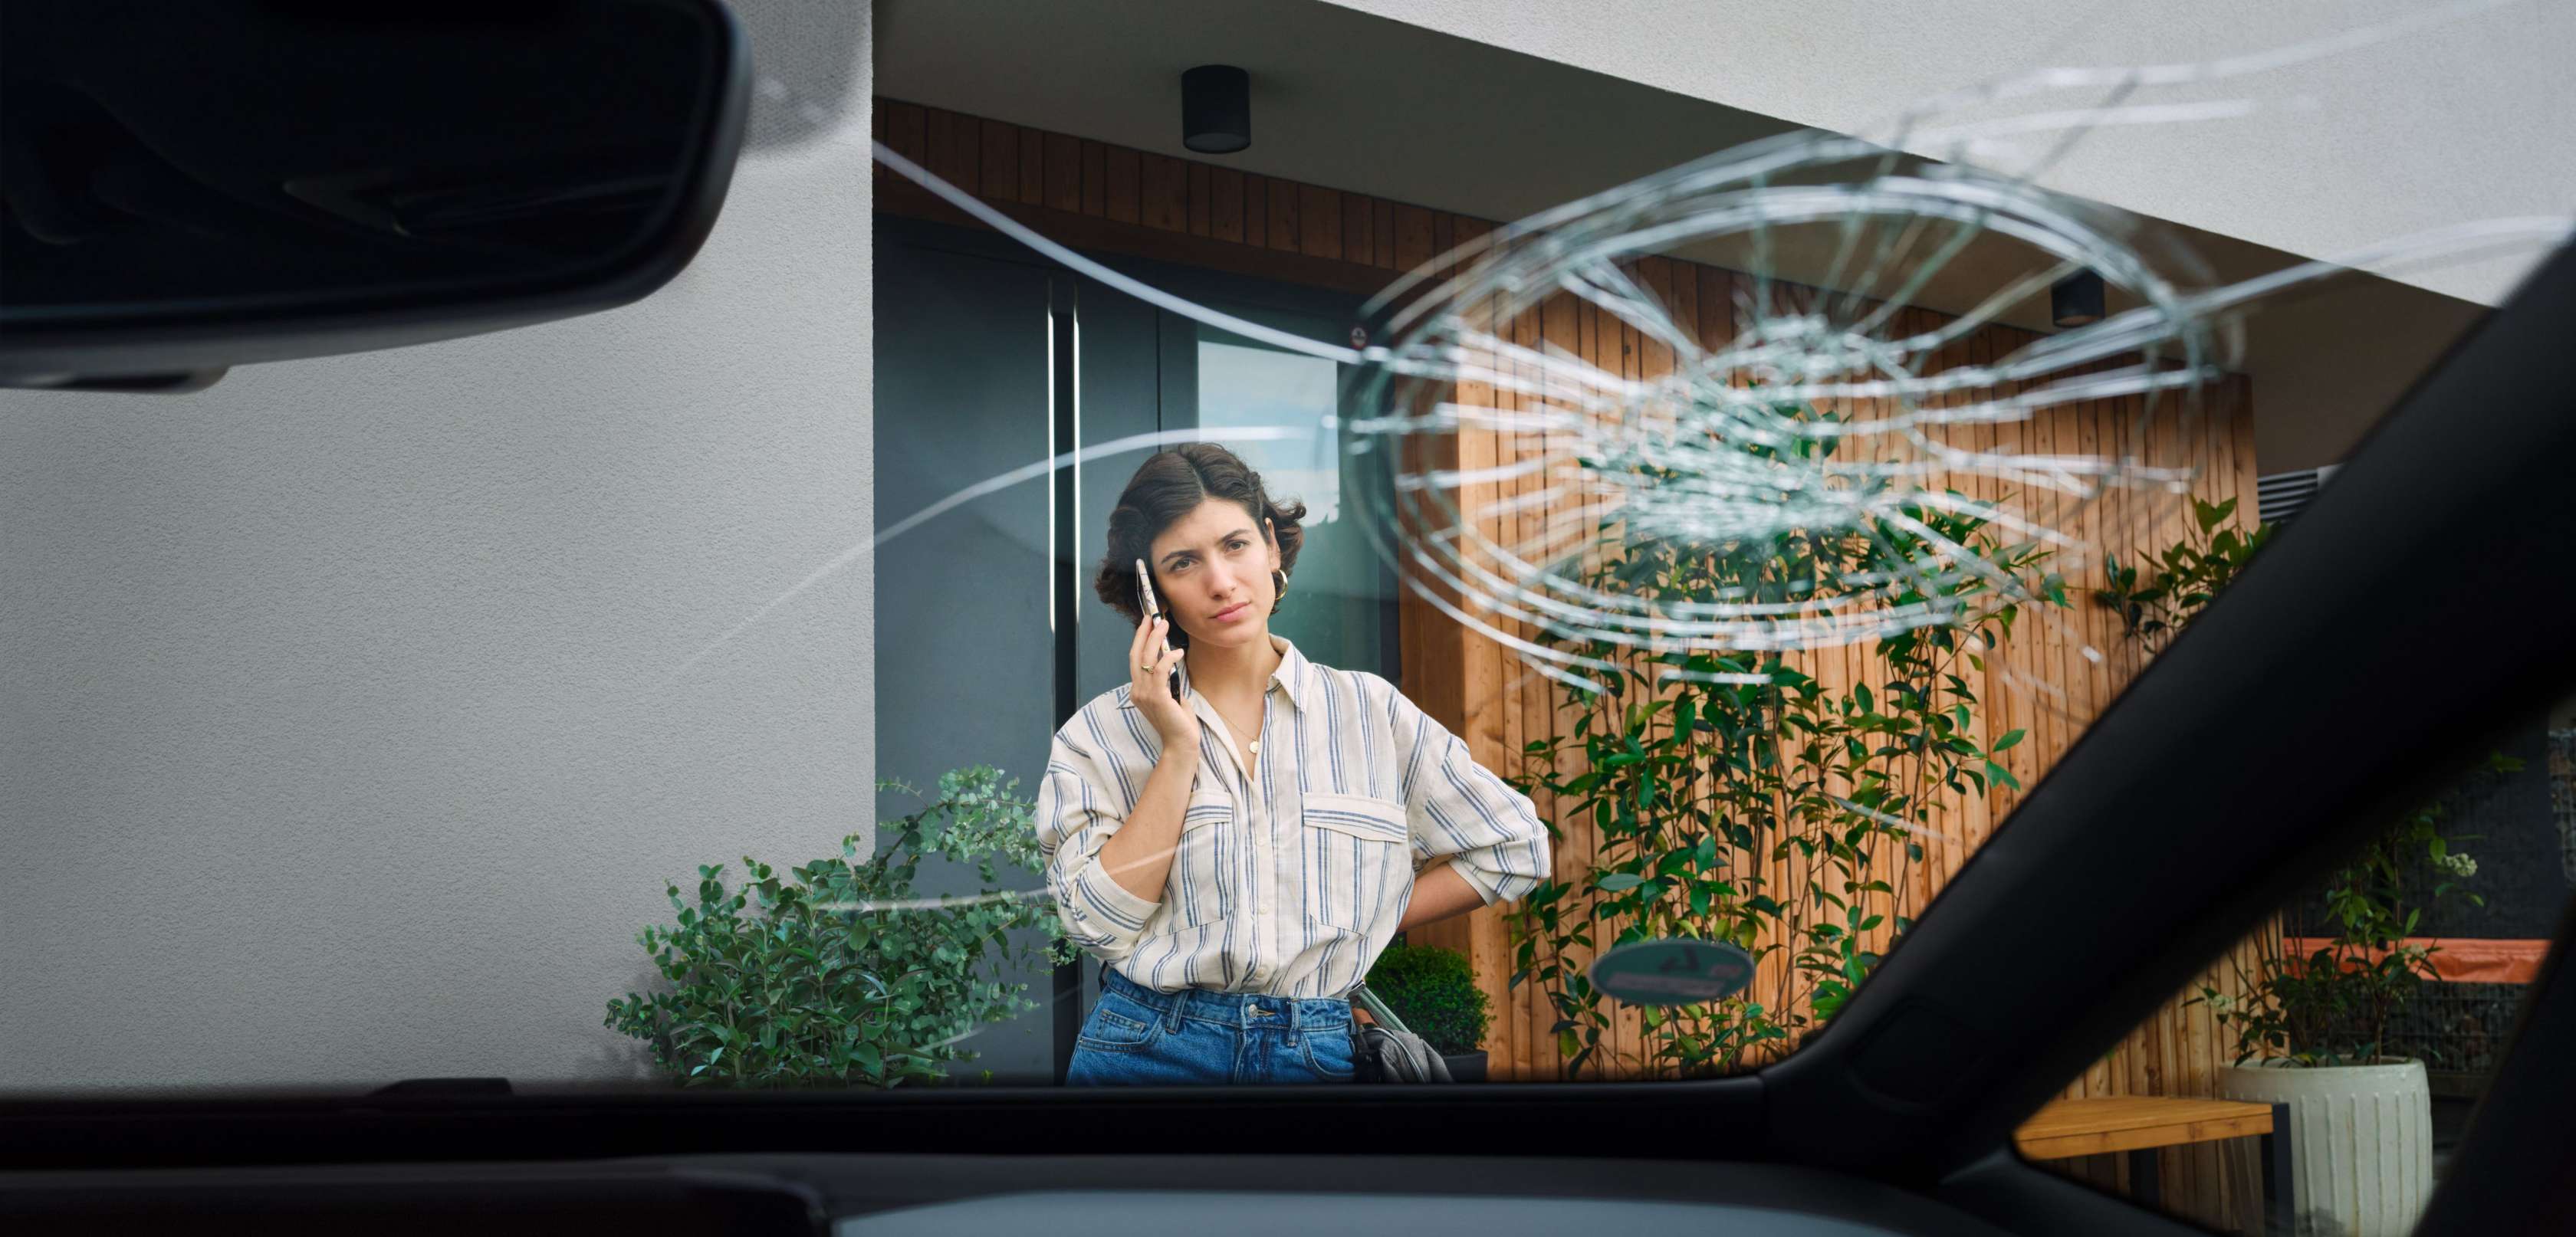 Junge Frau steht telefonierend vor ihrem Auto, das eine kaputte Windschutzscheibe ha